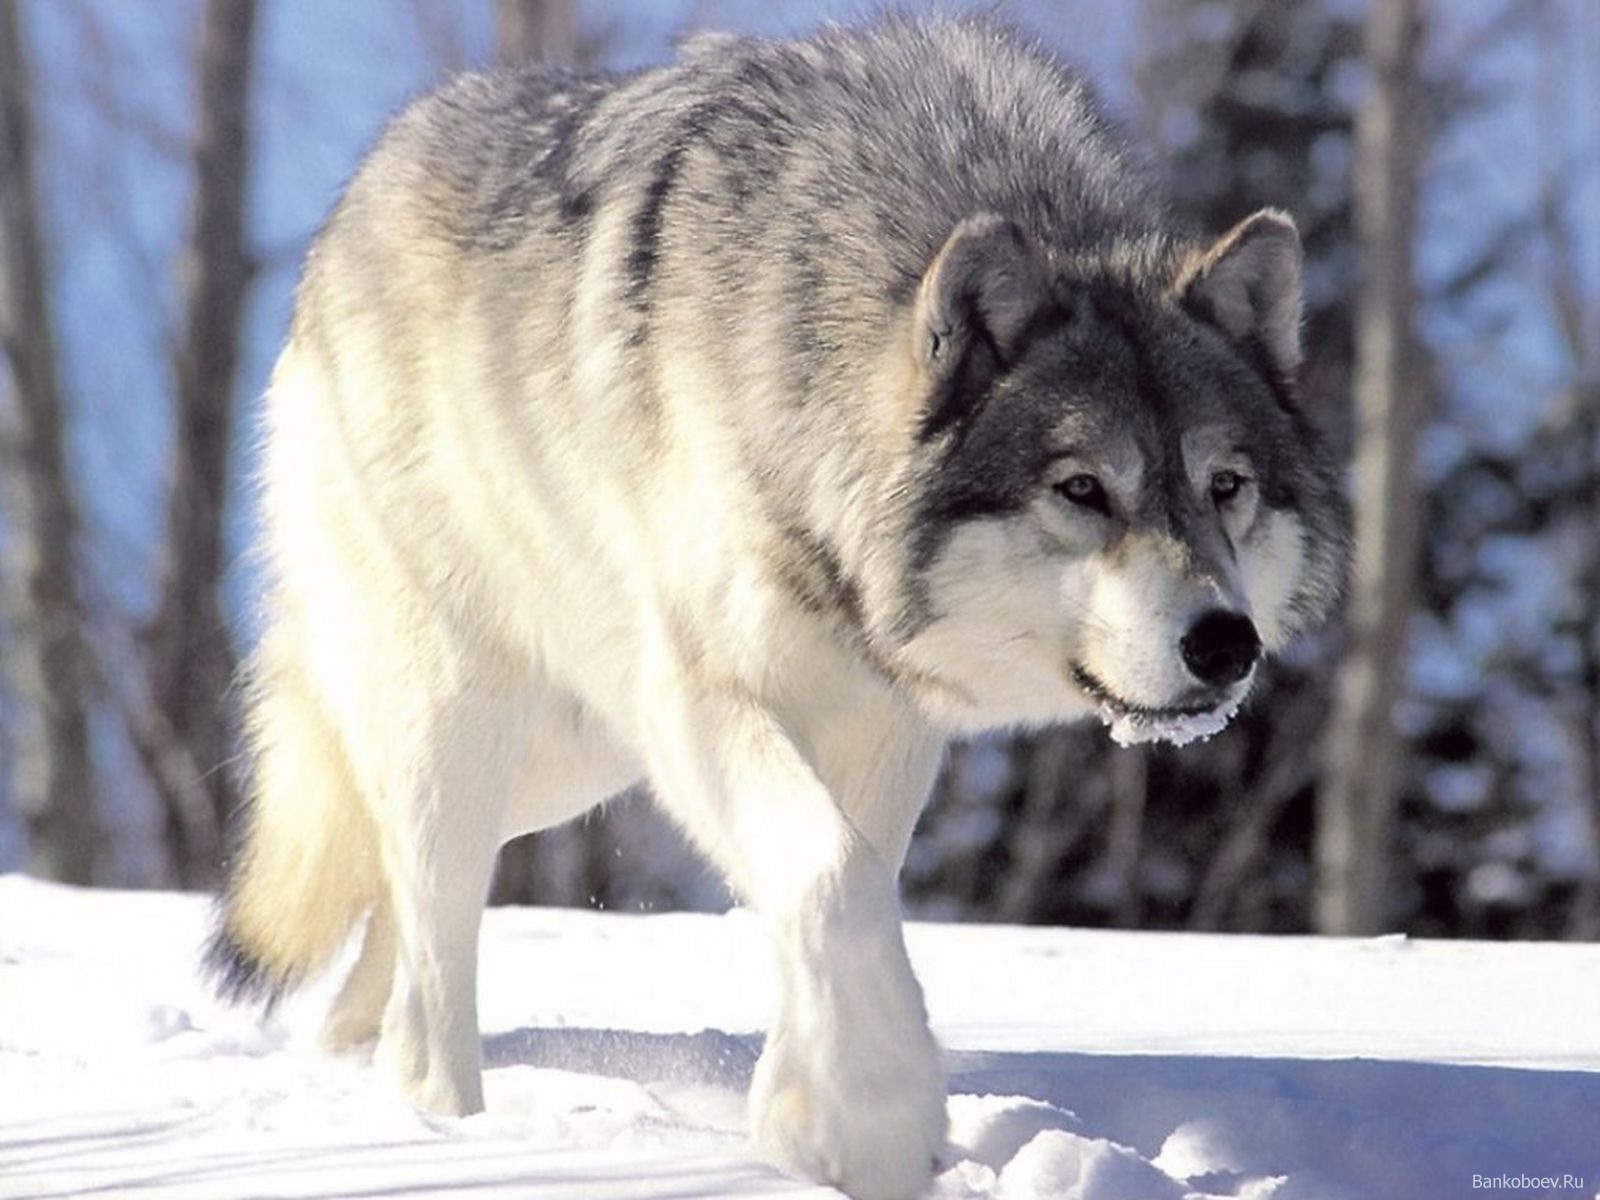 Умственные способности волков сильно переоценены